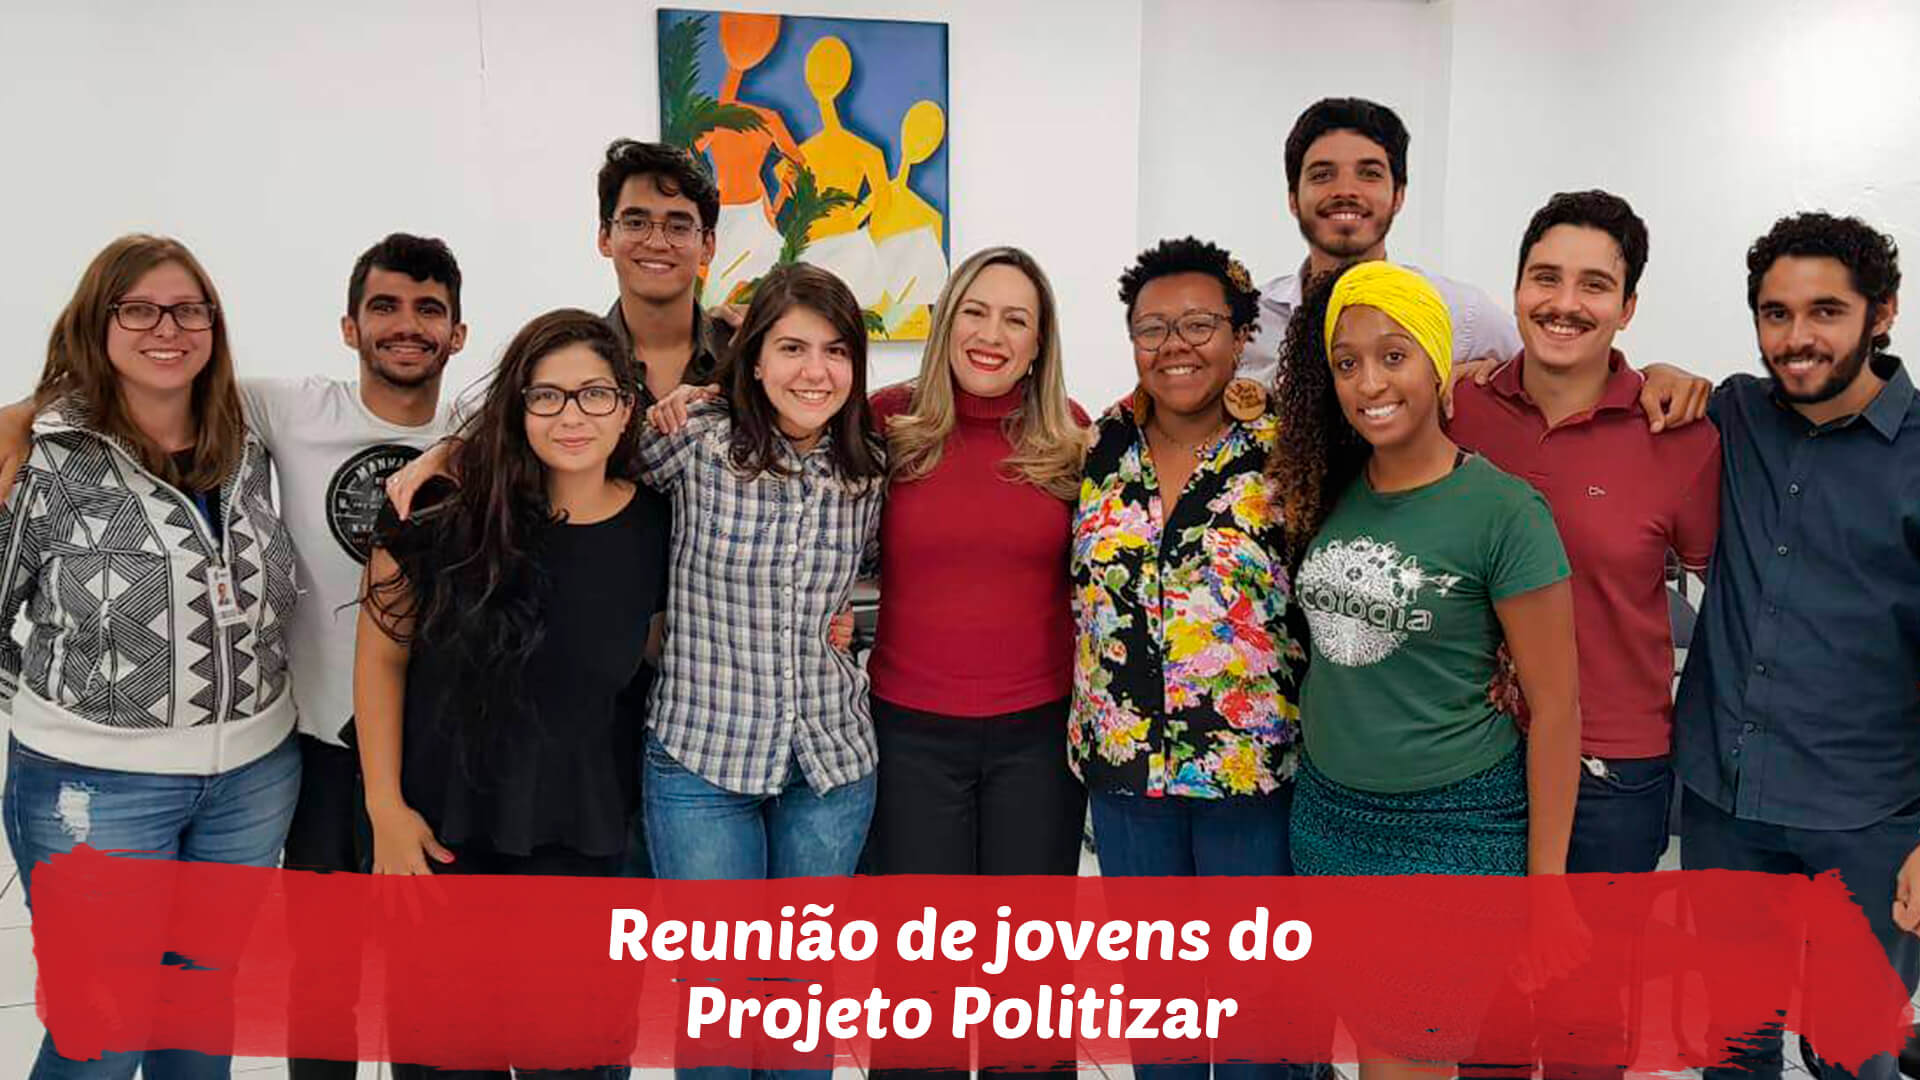 Reunião de jovens do Projeto Politizar